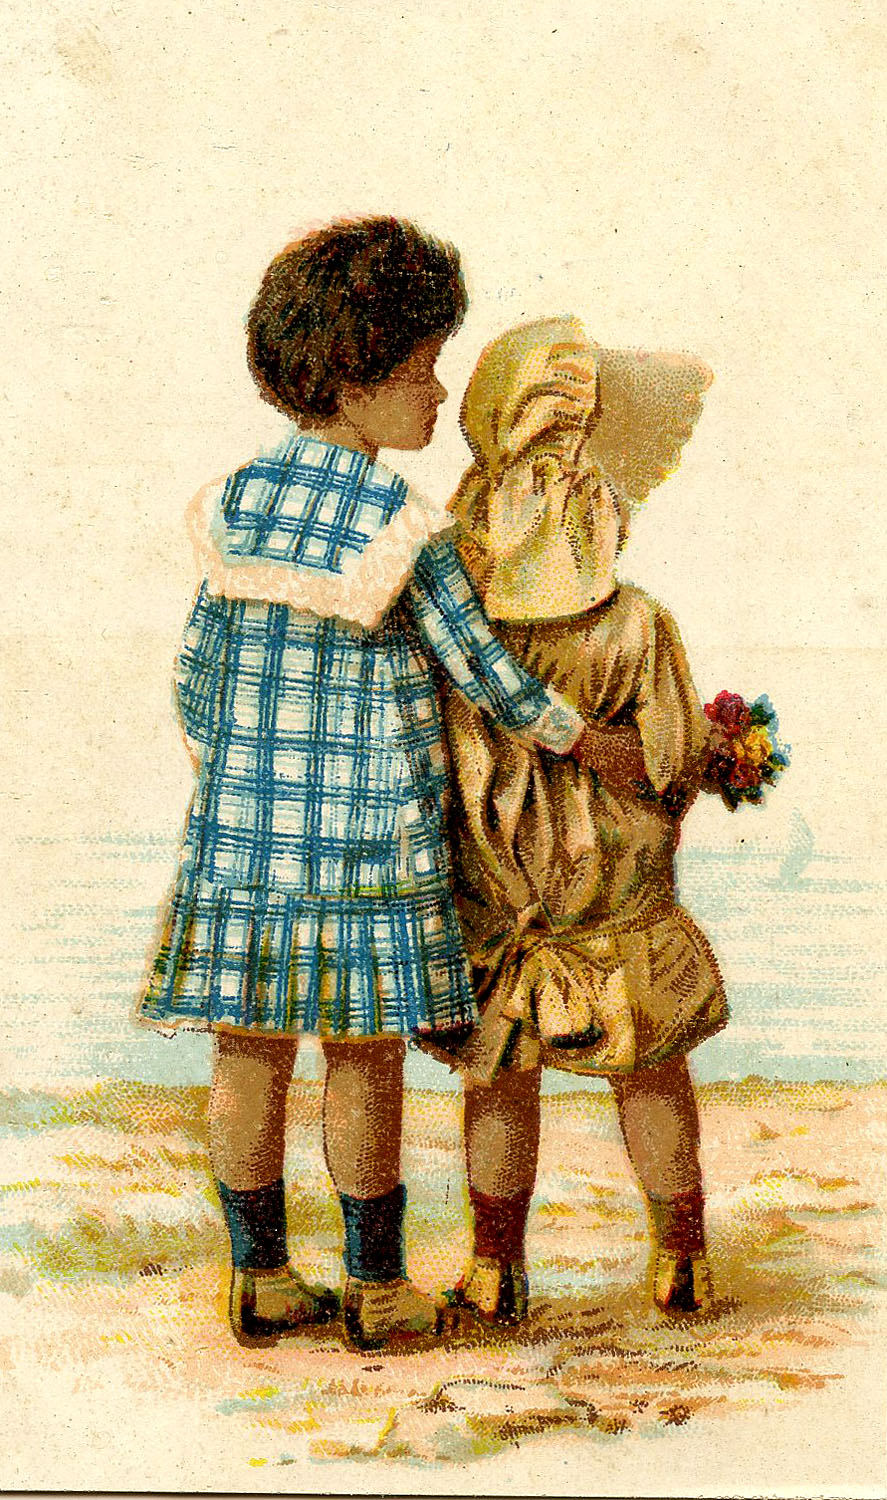 Vintage Graphic - Sweet Black Children - Sunbonnet - The Graphics Fairy